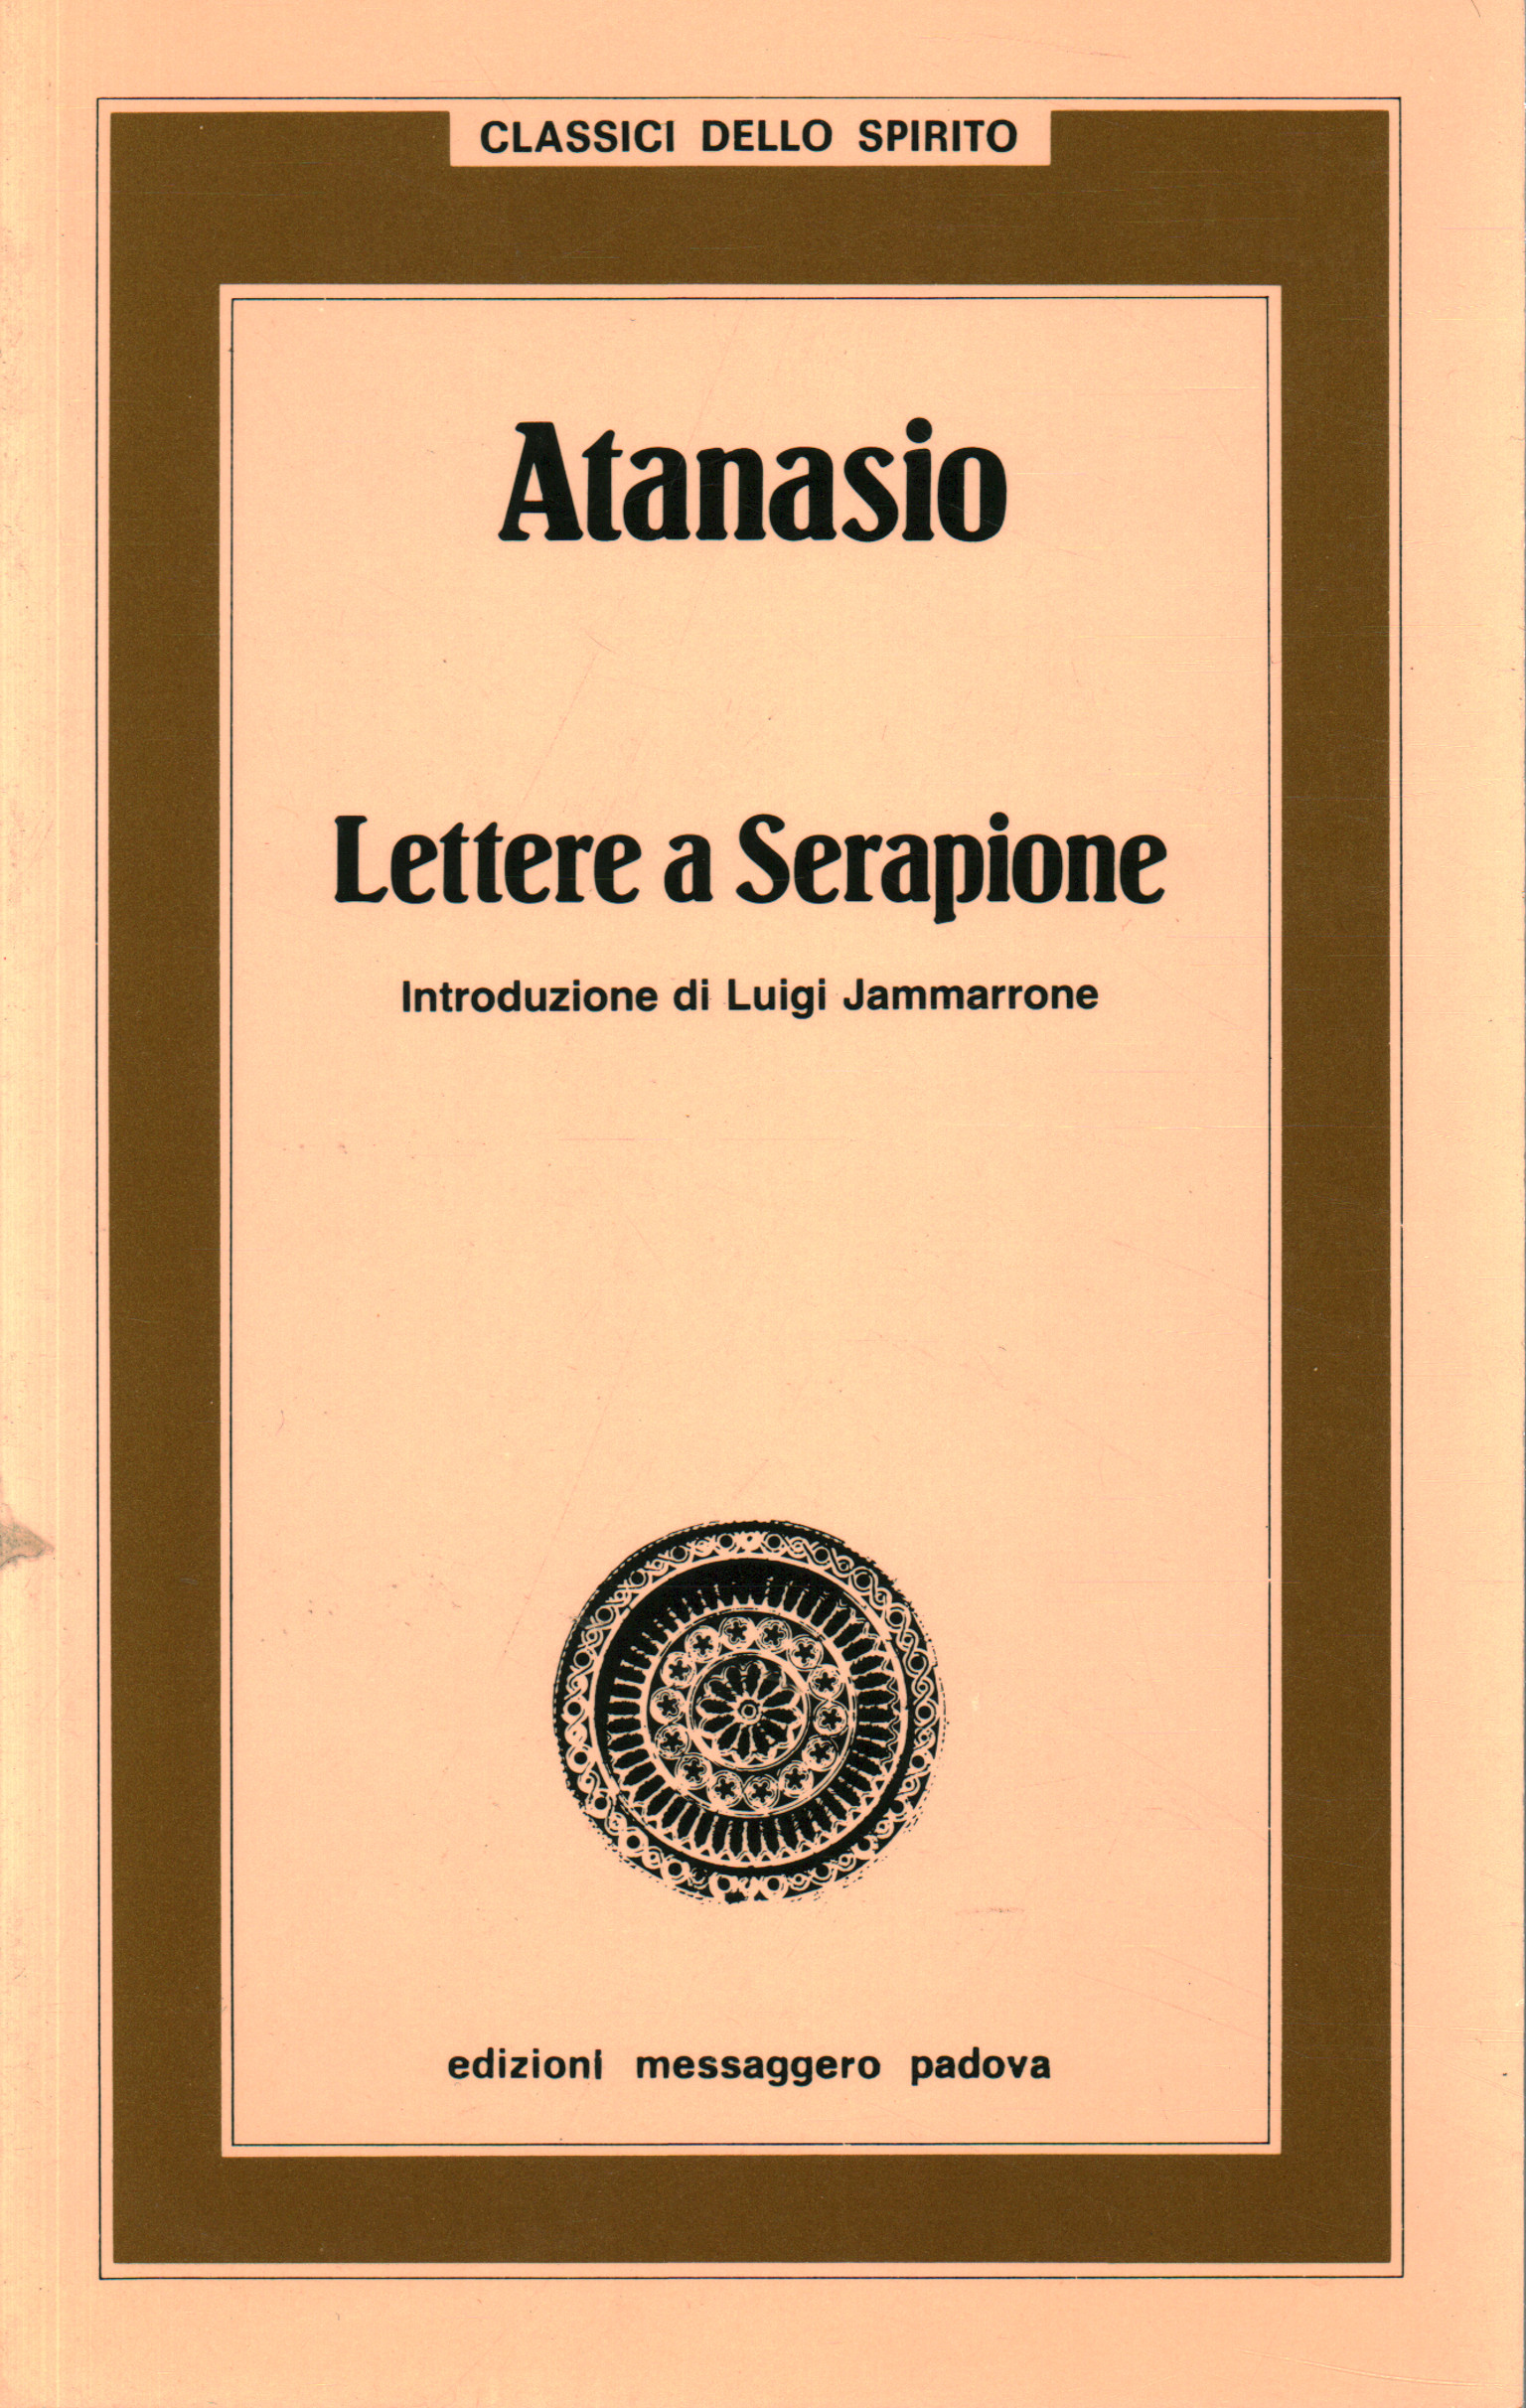 Lettere a Serapione, Anastasio